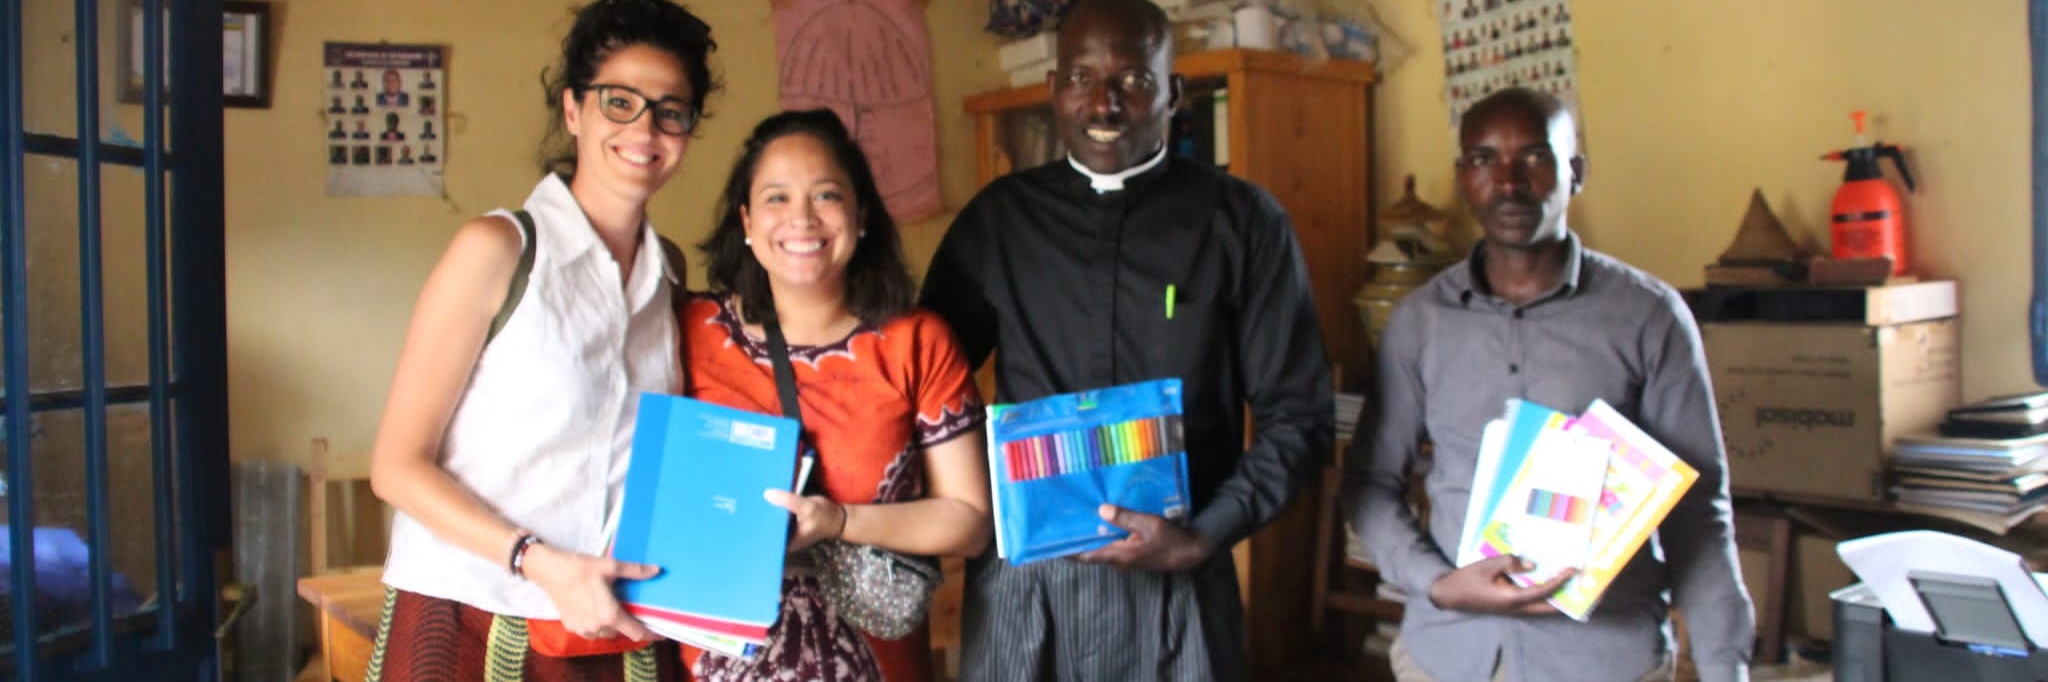 ElPorvenirSolidario: El material escolar y de higiene llegó a los niños de Ruanda en agosto